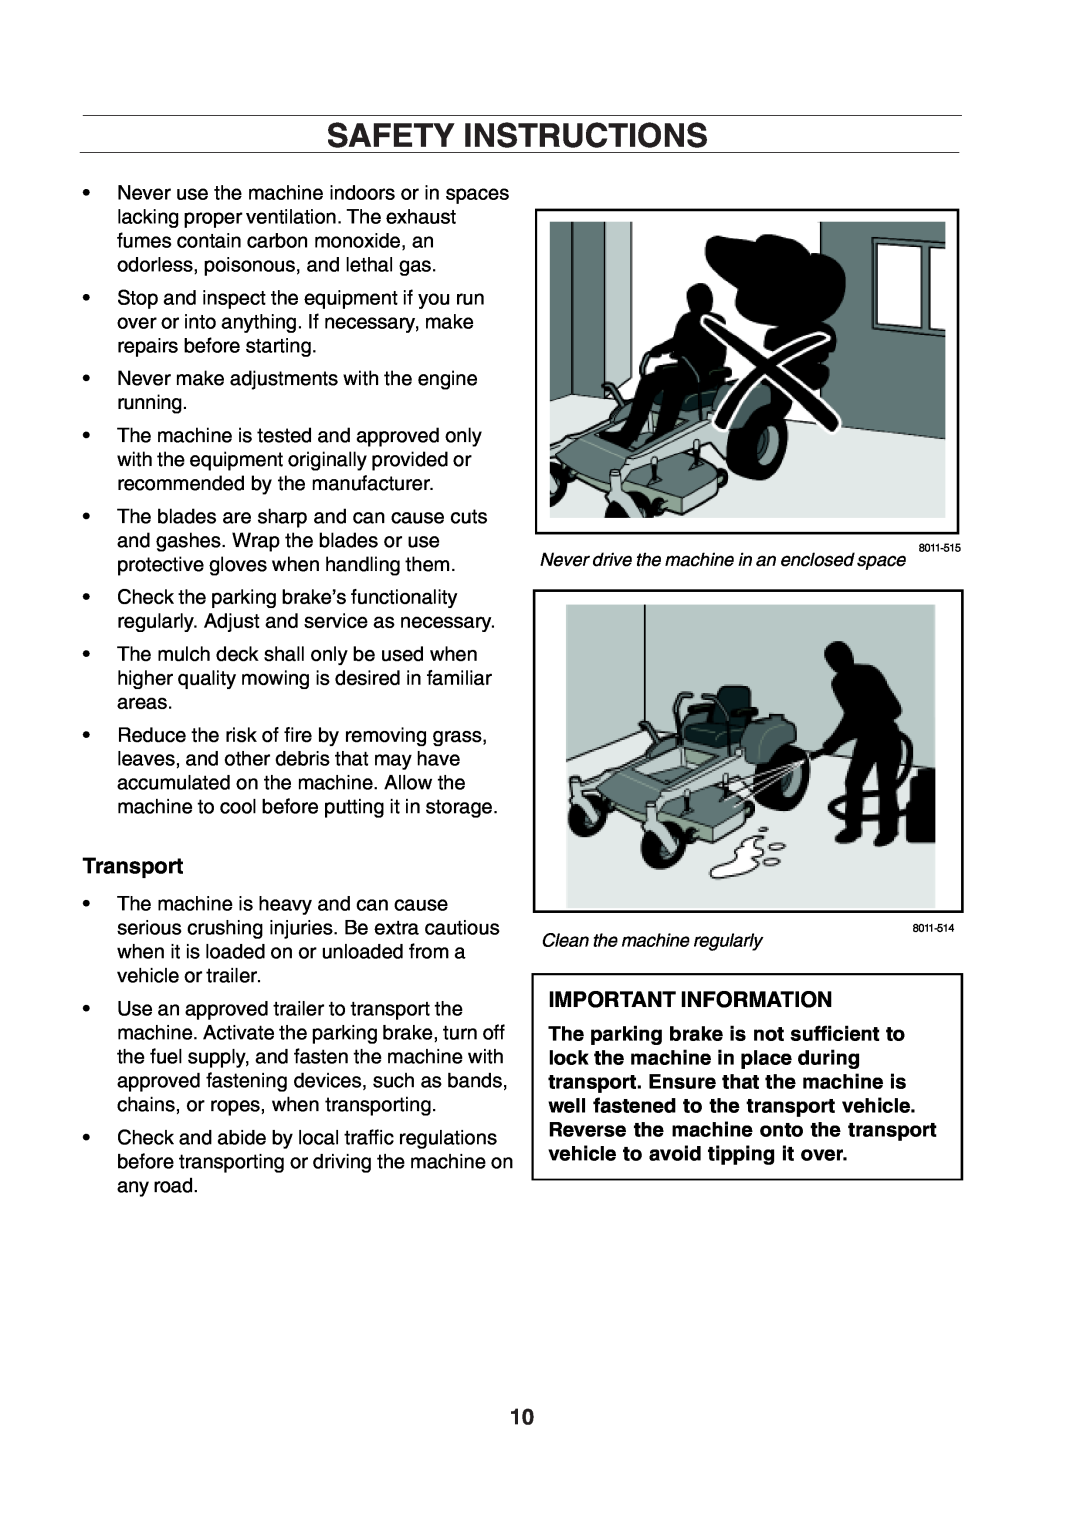 Husqvarna CZE 4818 manual Safety Instructions, Transport, Important Information 